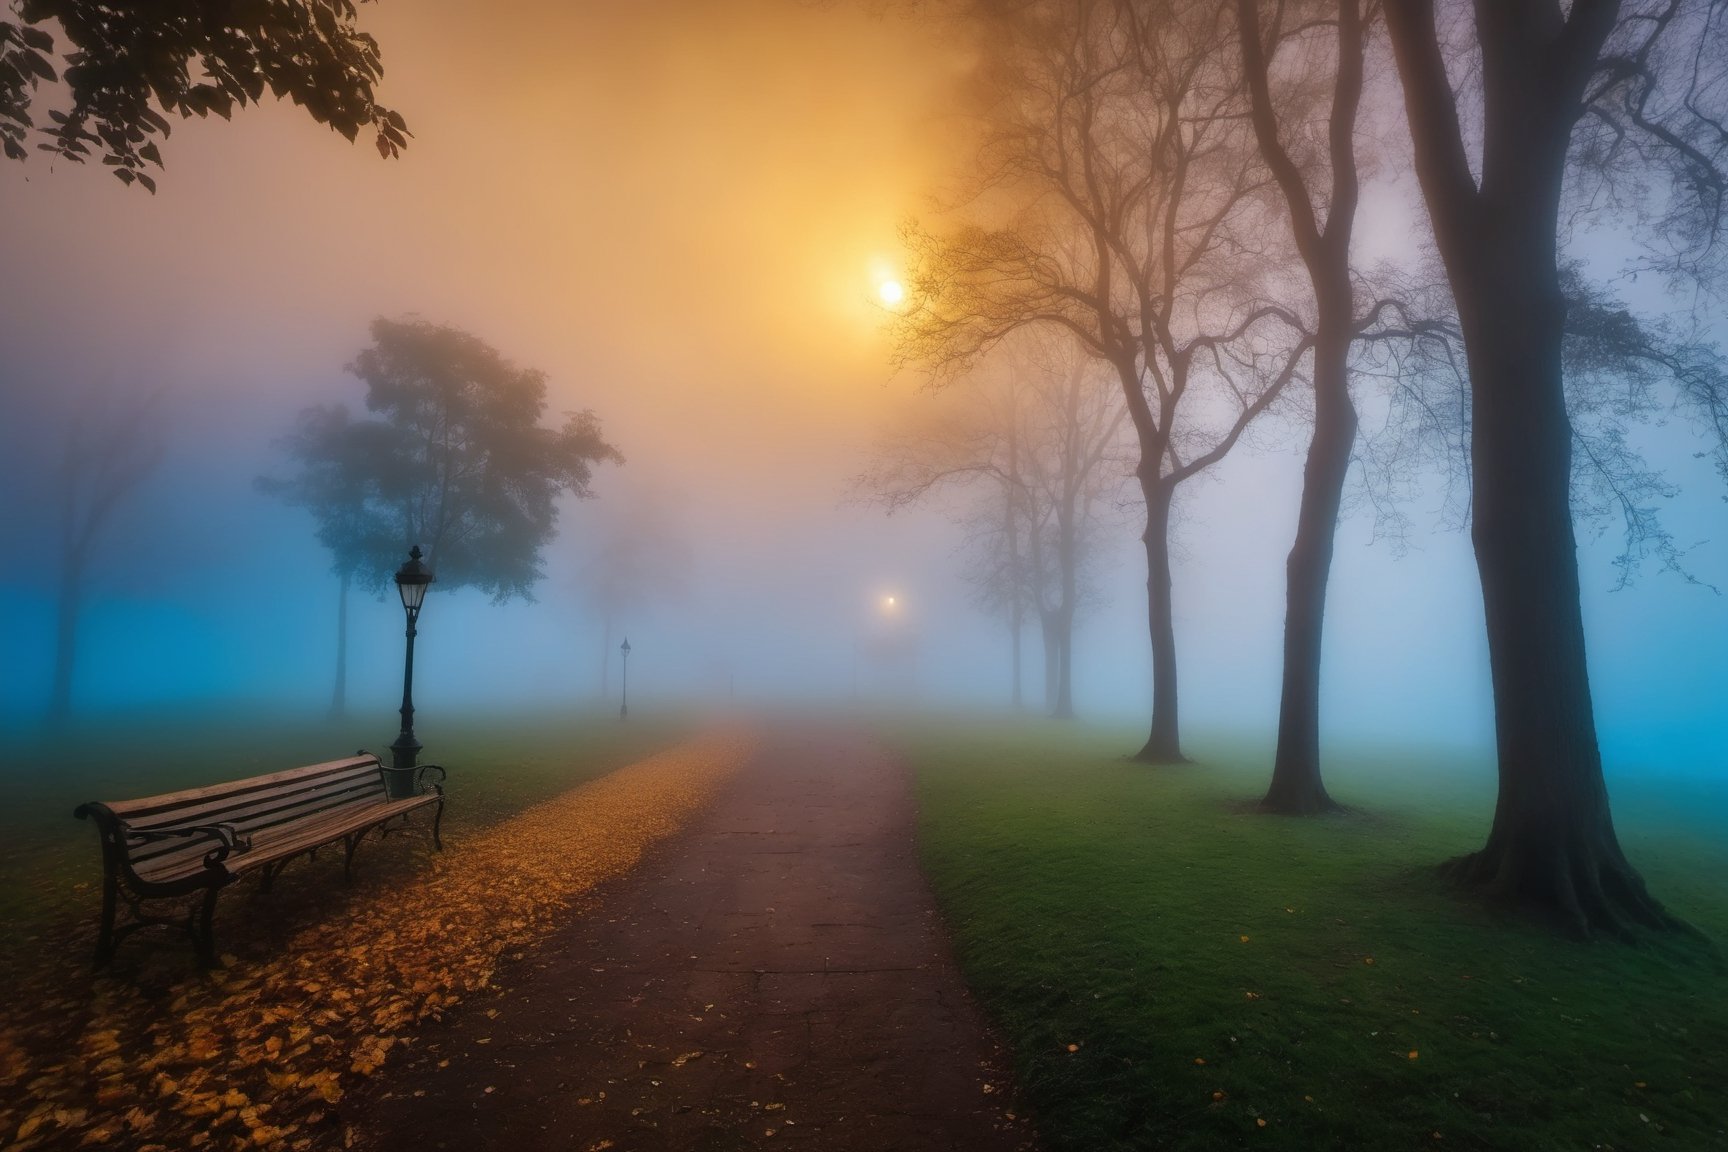 The park at rain, twilight, fog, mist, golden hour, blue vibes 